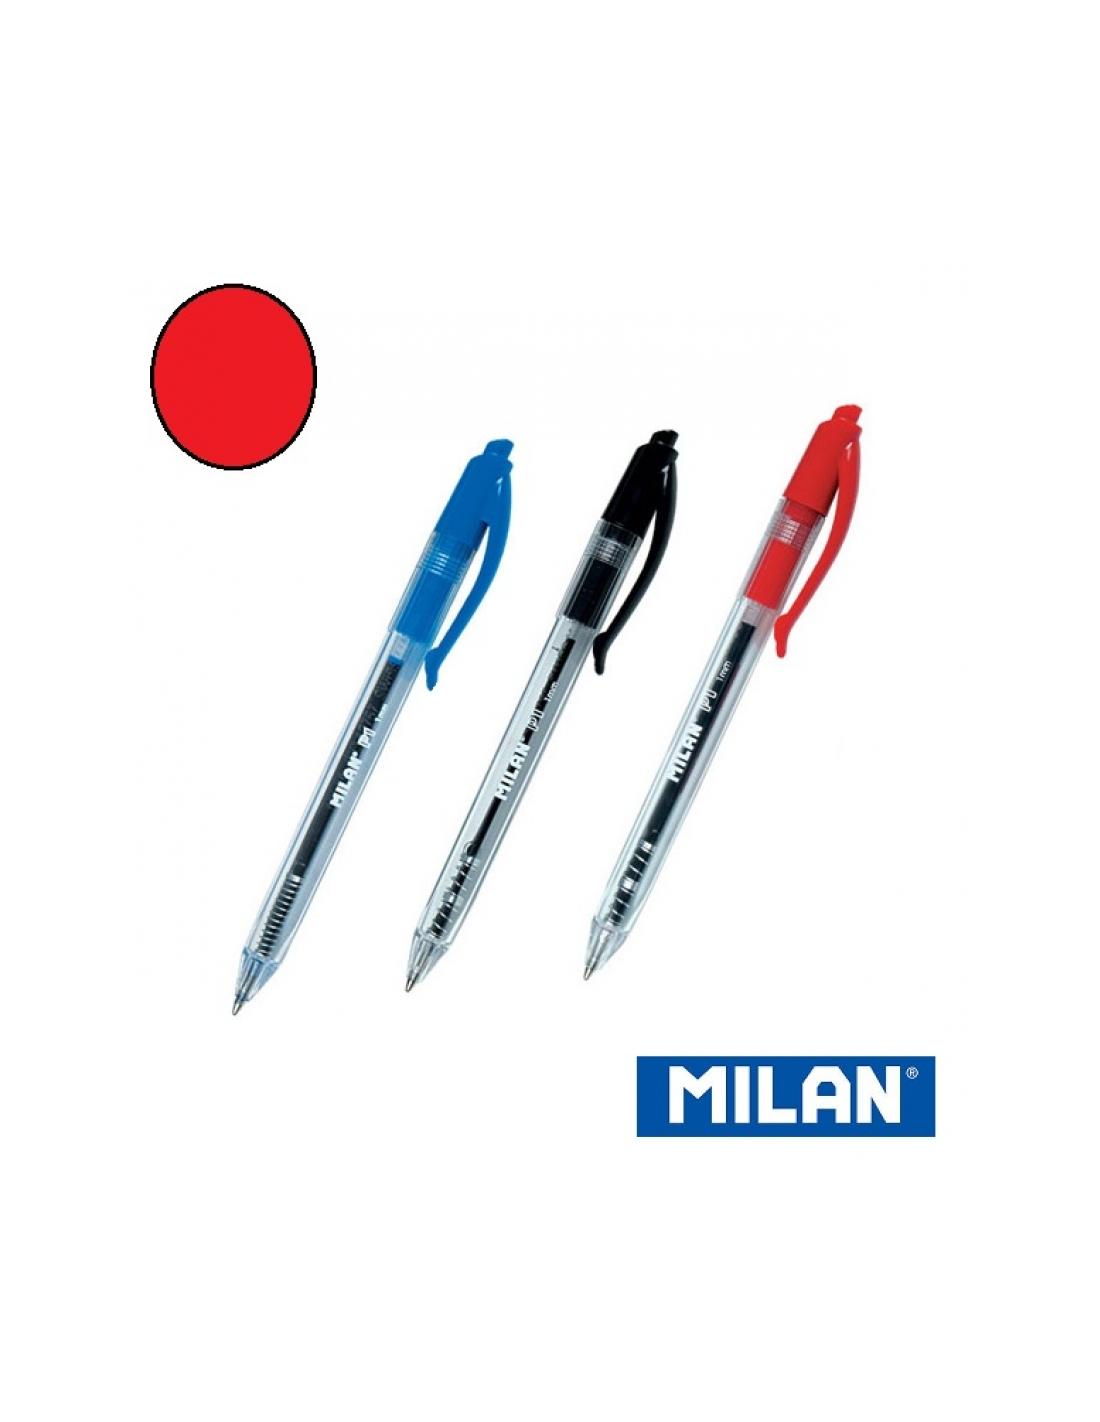 Boligrafos Milan Capsule 1.0 17656590320 rojo